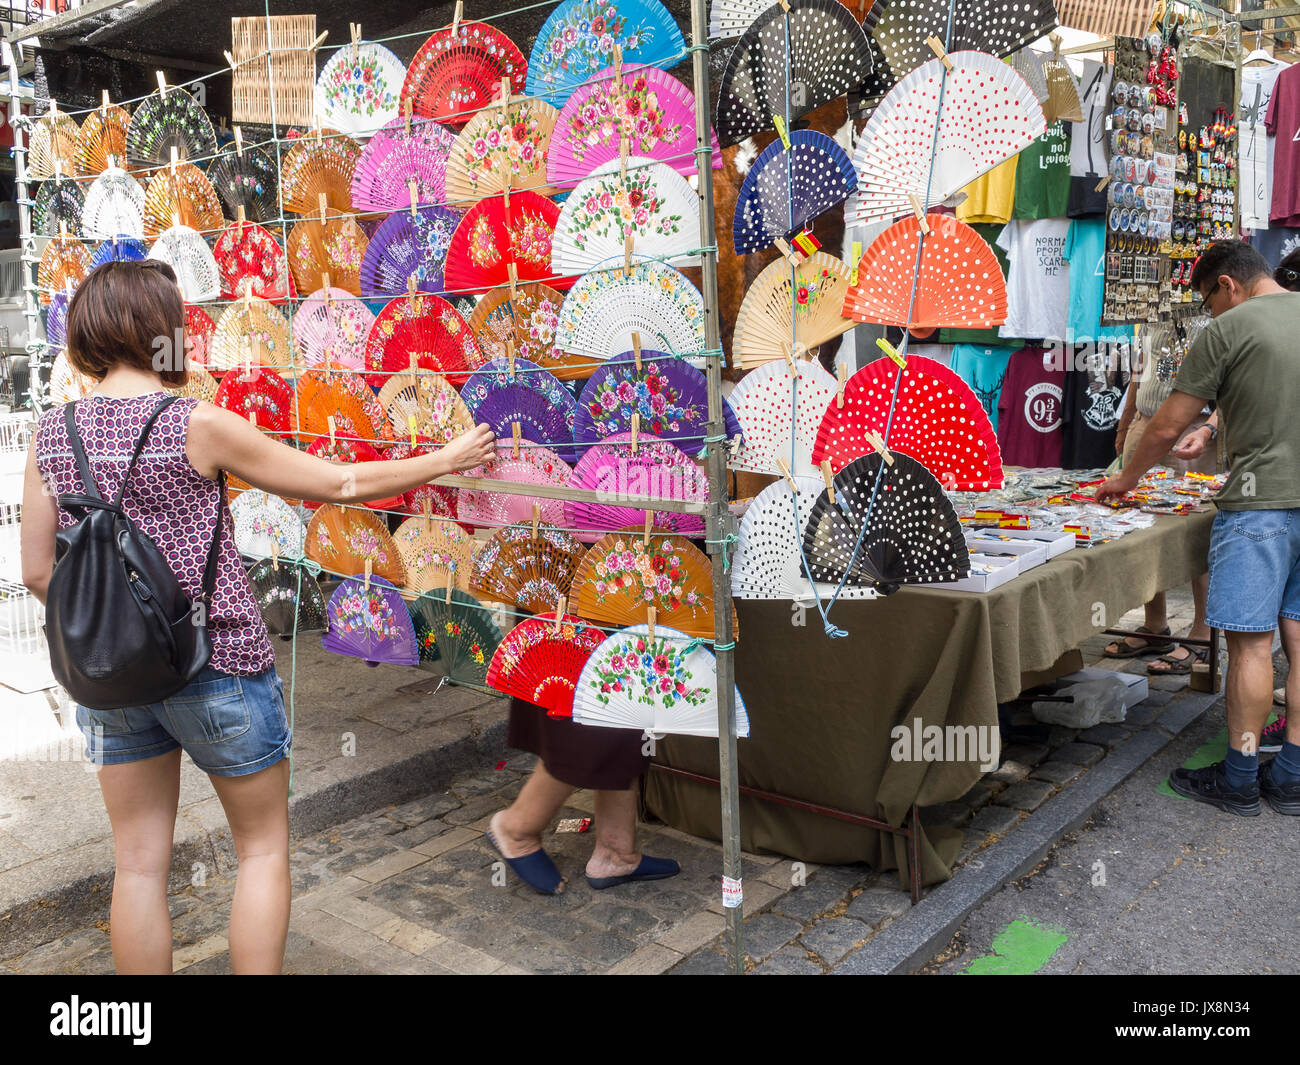 El Rastro. Mercado al aire libre de Madrid. España Foto de stock